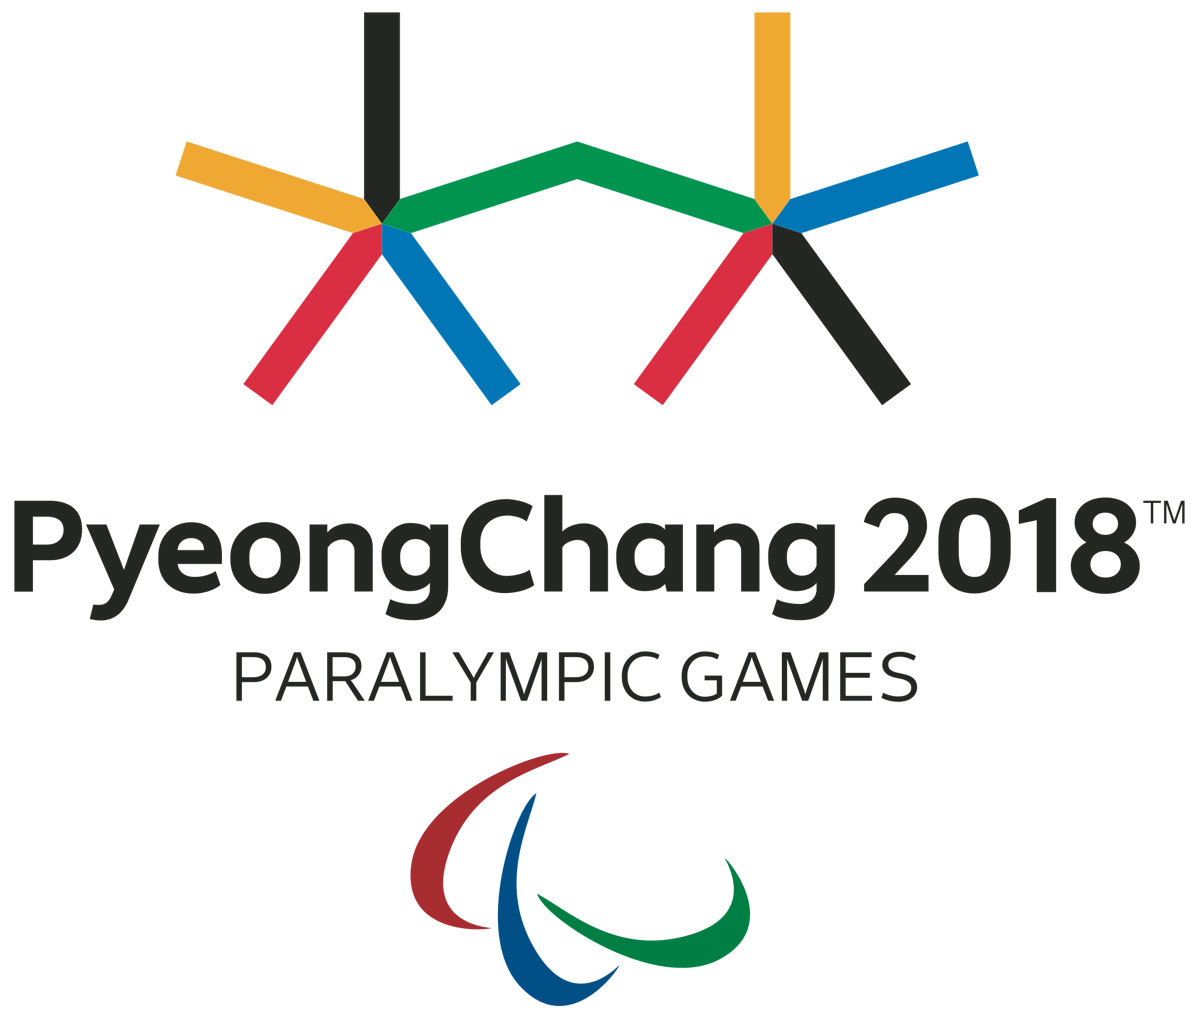 Медальний залік Паралімпіади-2018 на 15 березня. паралімпіада-2018, паралімпійські ігри, змагання, медаль, тренування, design, screenshot, graphic, logo, symbol, graphics. A close up of a clock